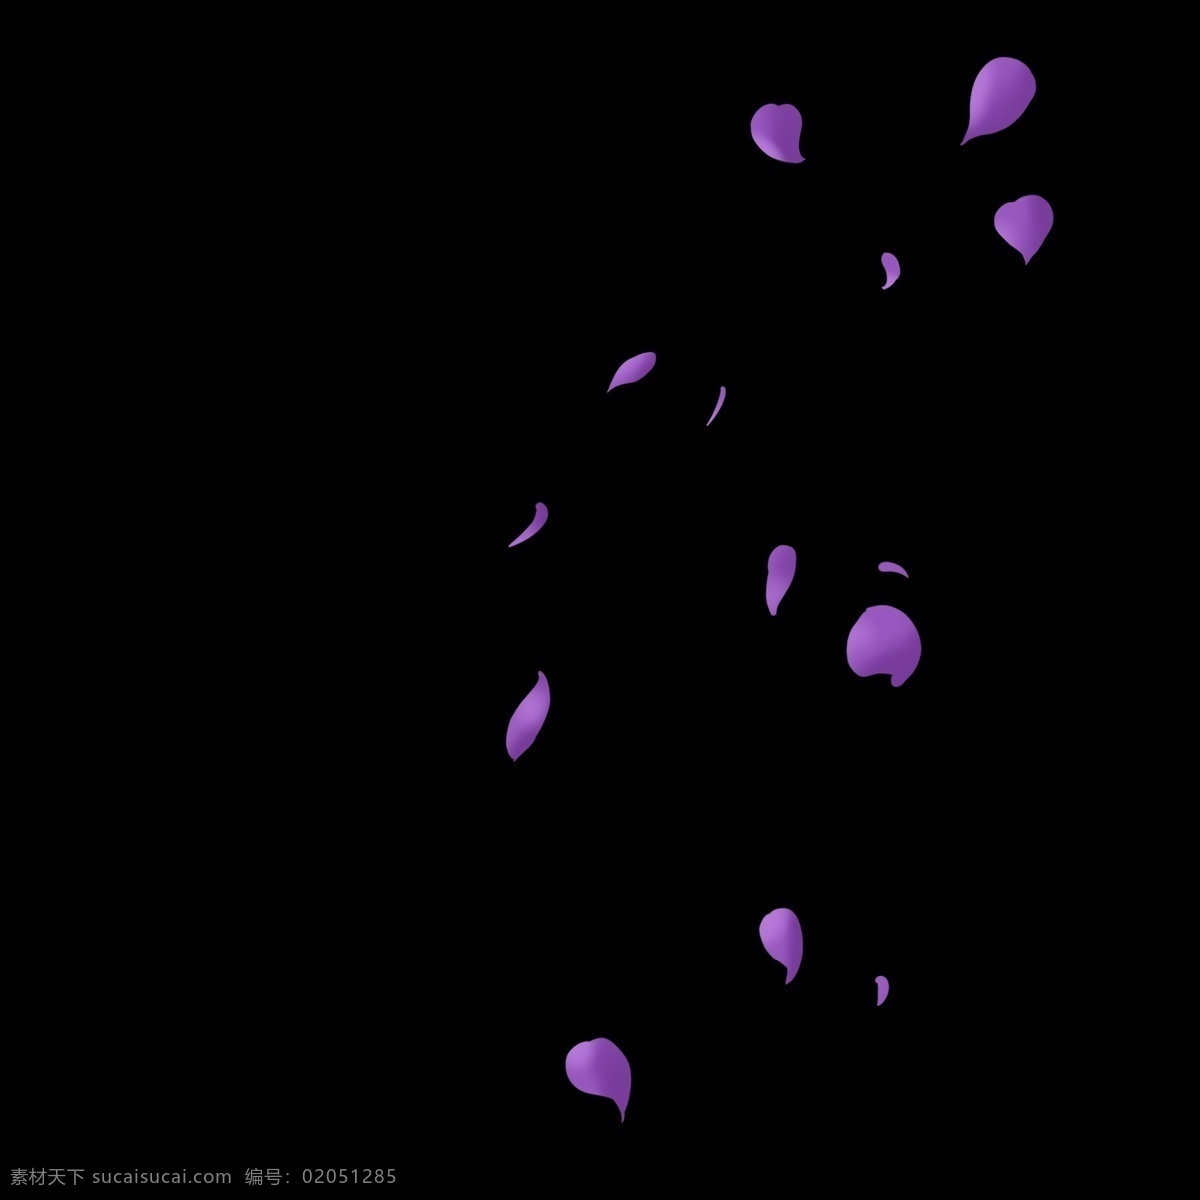 紫色 花瓣 漂浮 元素 落英缤纷 掉落 花朵 花卉 飘落 飞舞 插画 手绘 卡通 psd文件